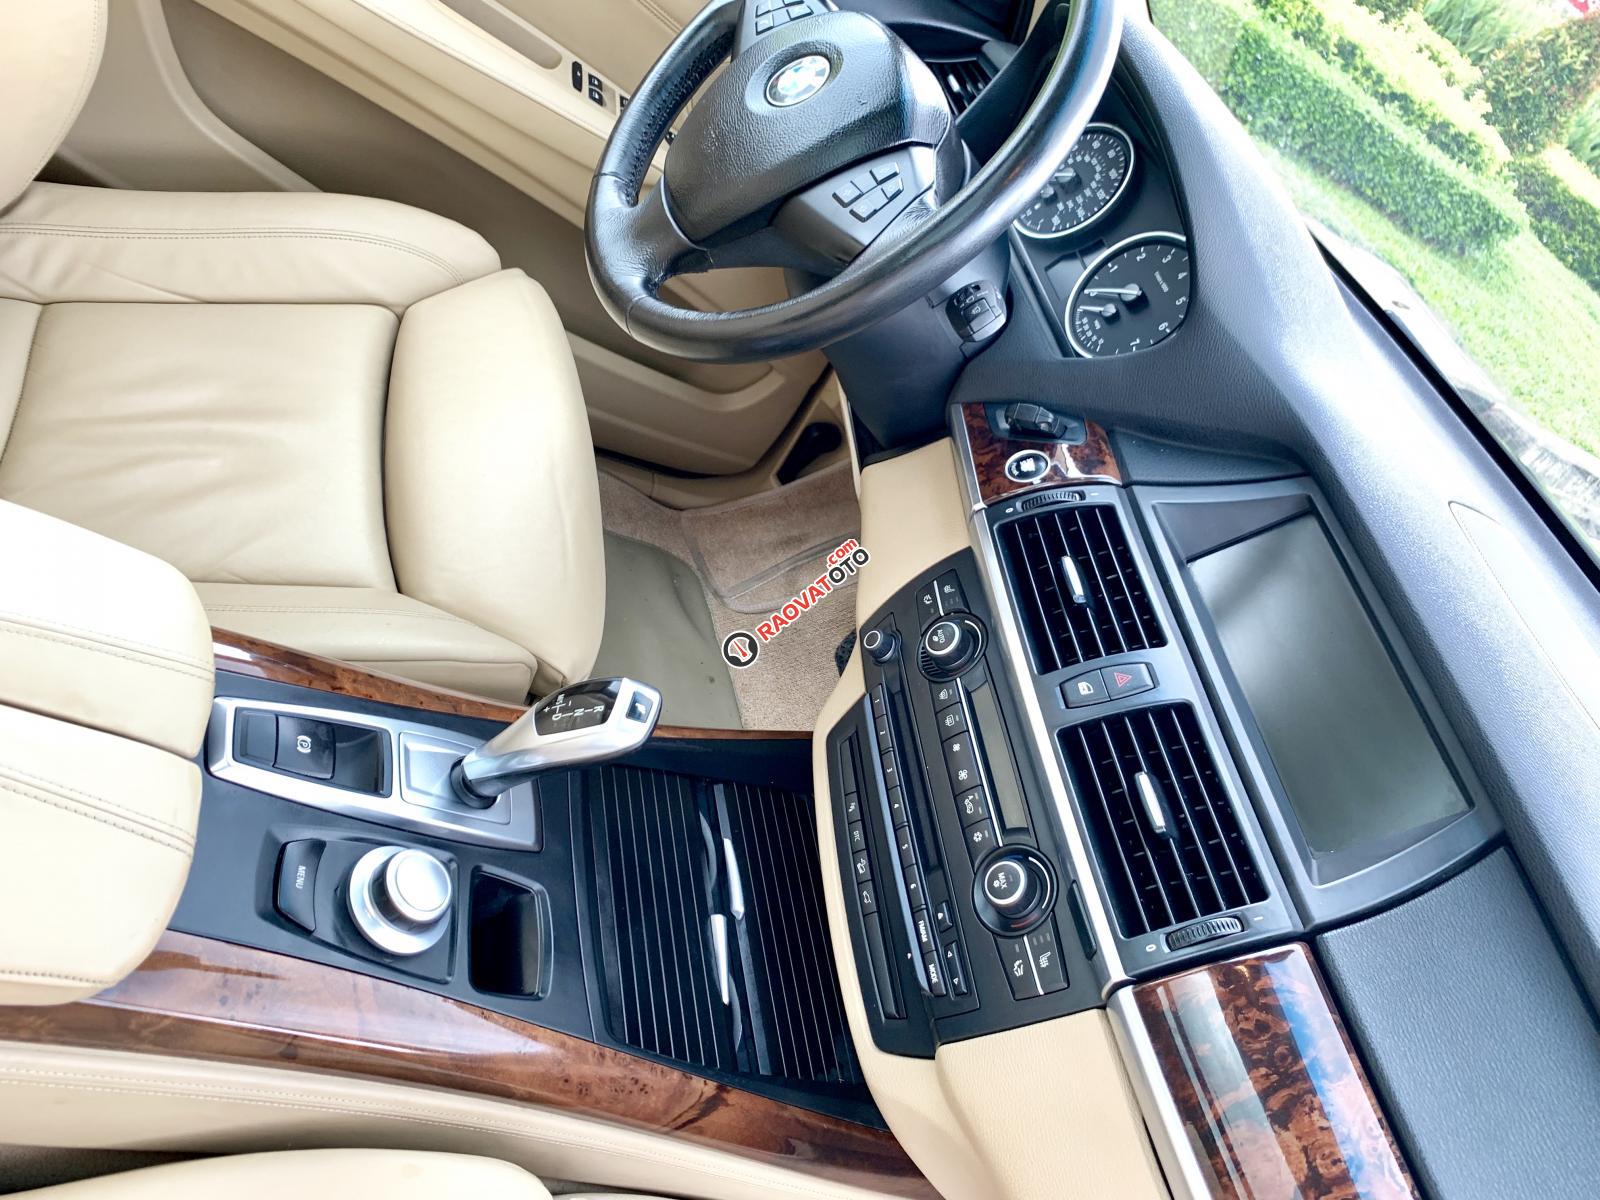 BMW X5 3.0 nhập Mỹ 2009 8 chỗ, hàng full cao cấp vào đủ đồ hai cửa sổ trời hai-8